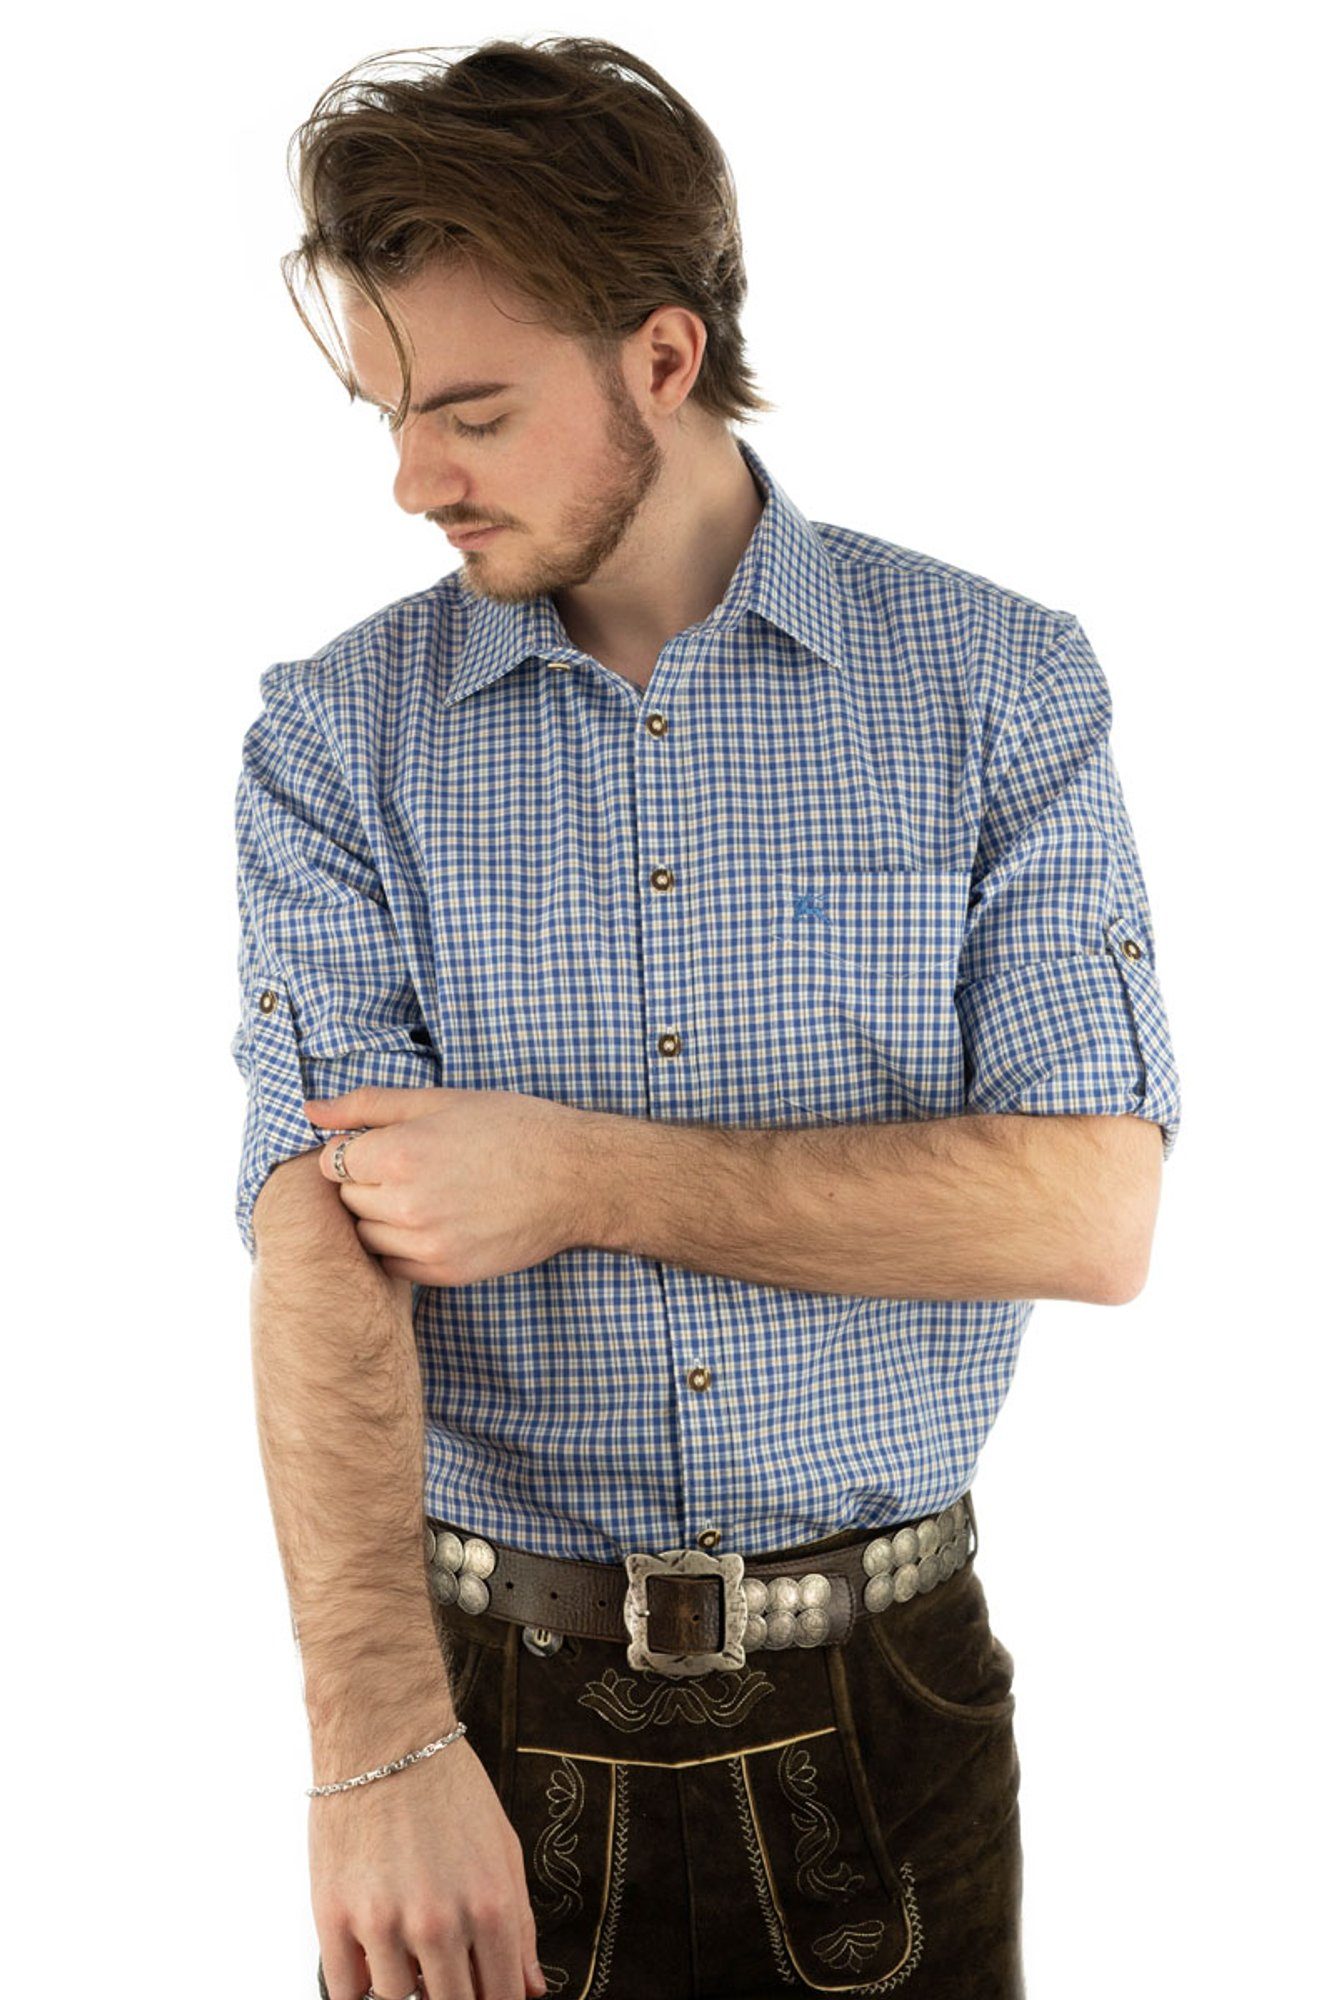 mit Brusttasche der kornblau Trachtenhemd Vakas Krempelärmeln und Langarmhemd OS-Trachten auf Hirsch-Stickerei